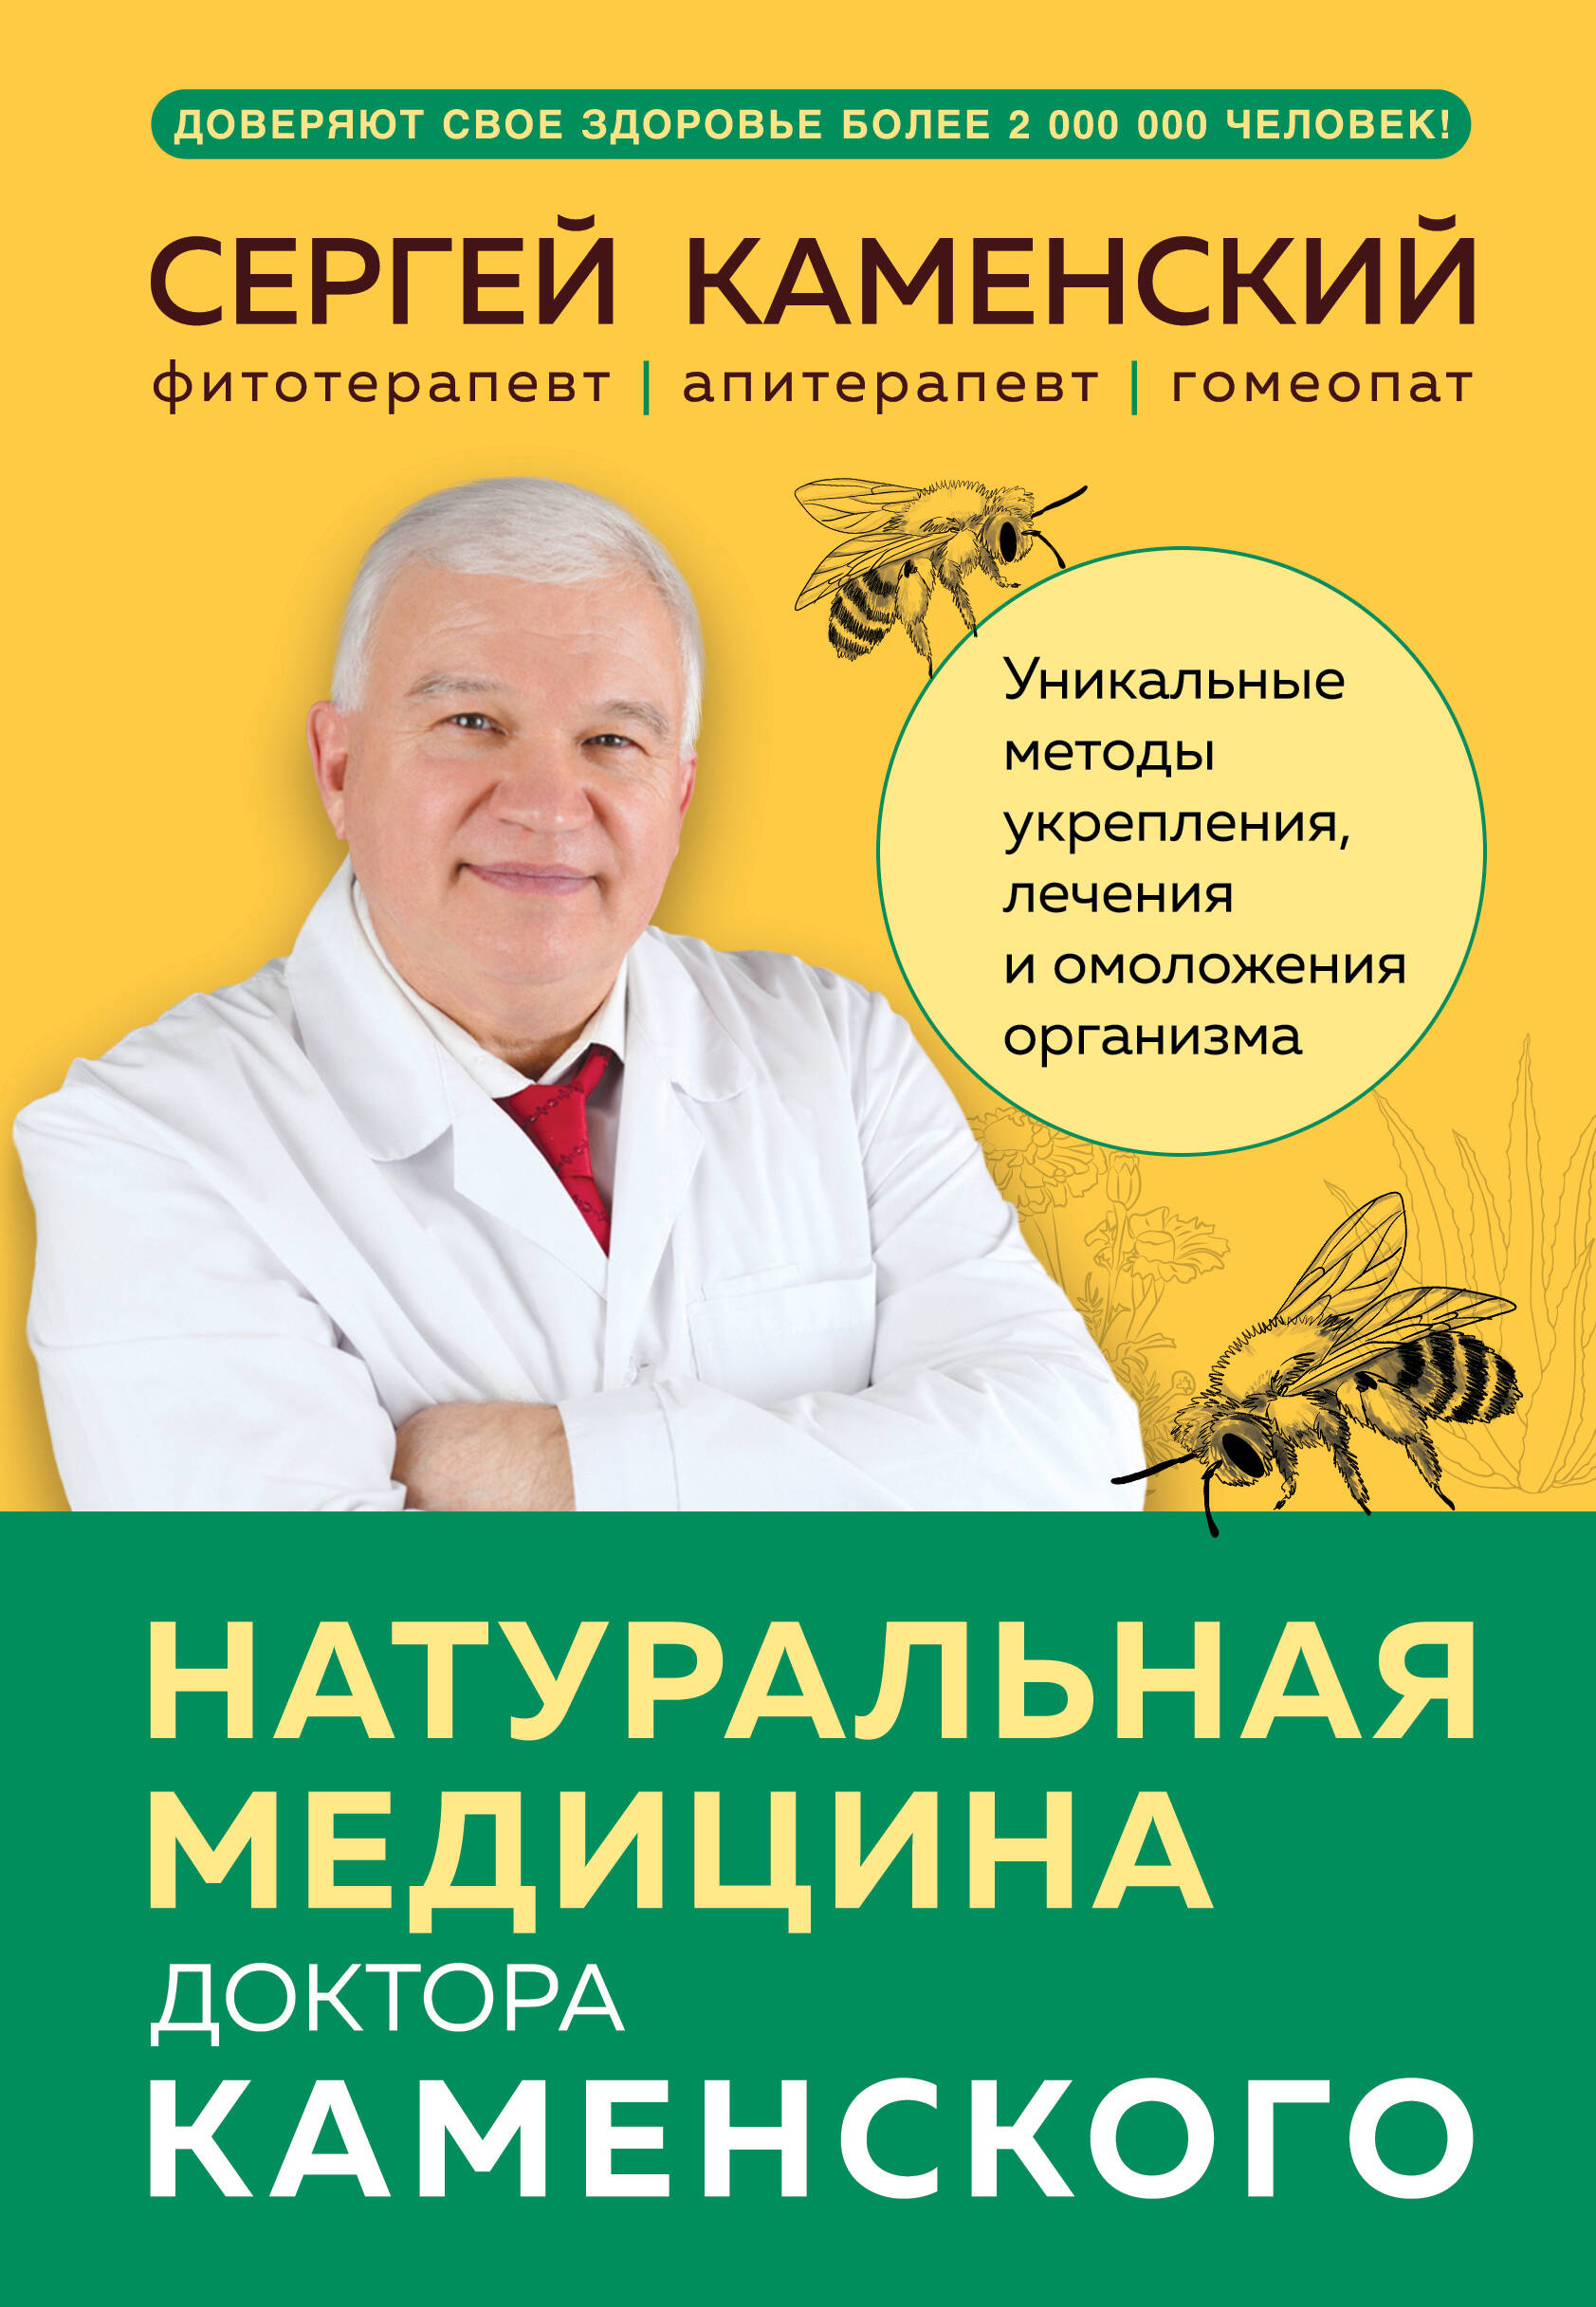 Naturmedizin von Dr. Kamensky. Einzigartige Methoden zur Stärkung, Behandlung und Verjüngung des Körpers